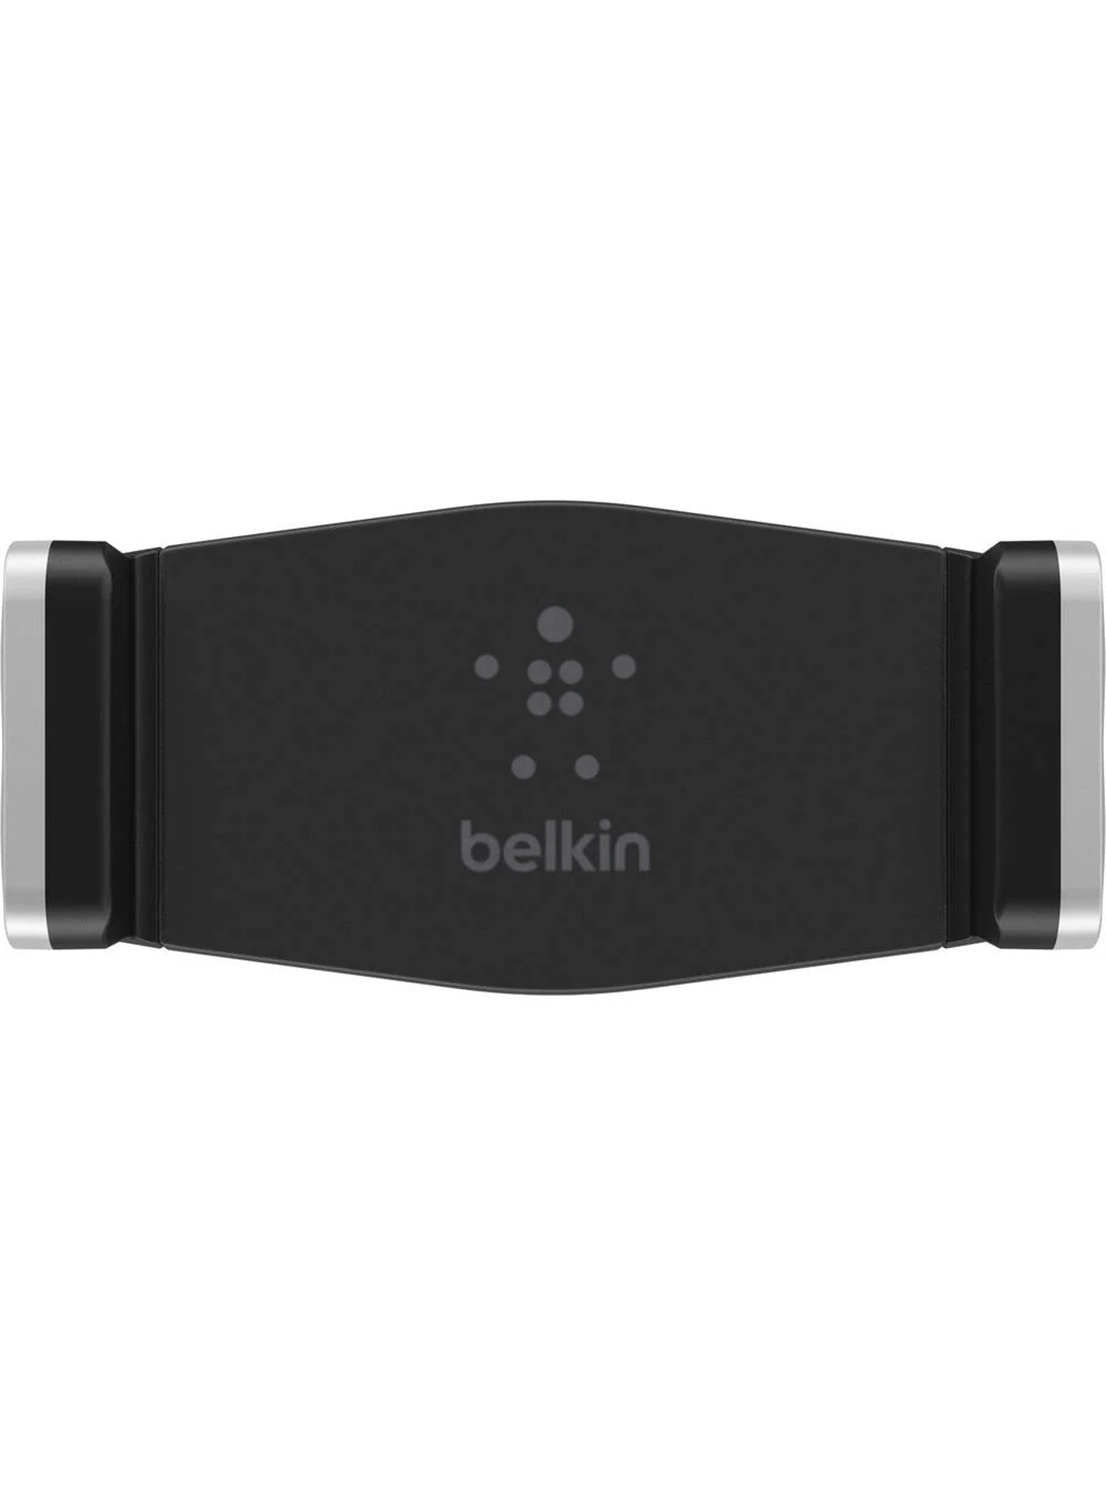 Belkin Auto Lüftungshalterung / Smartphone Halterung Silber (F7U017BT)